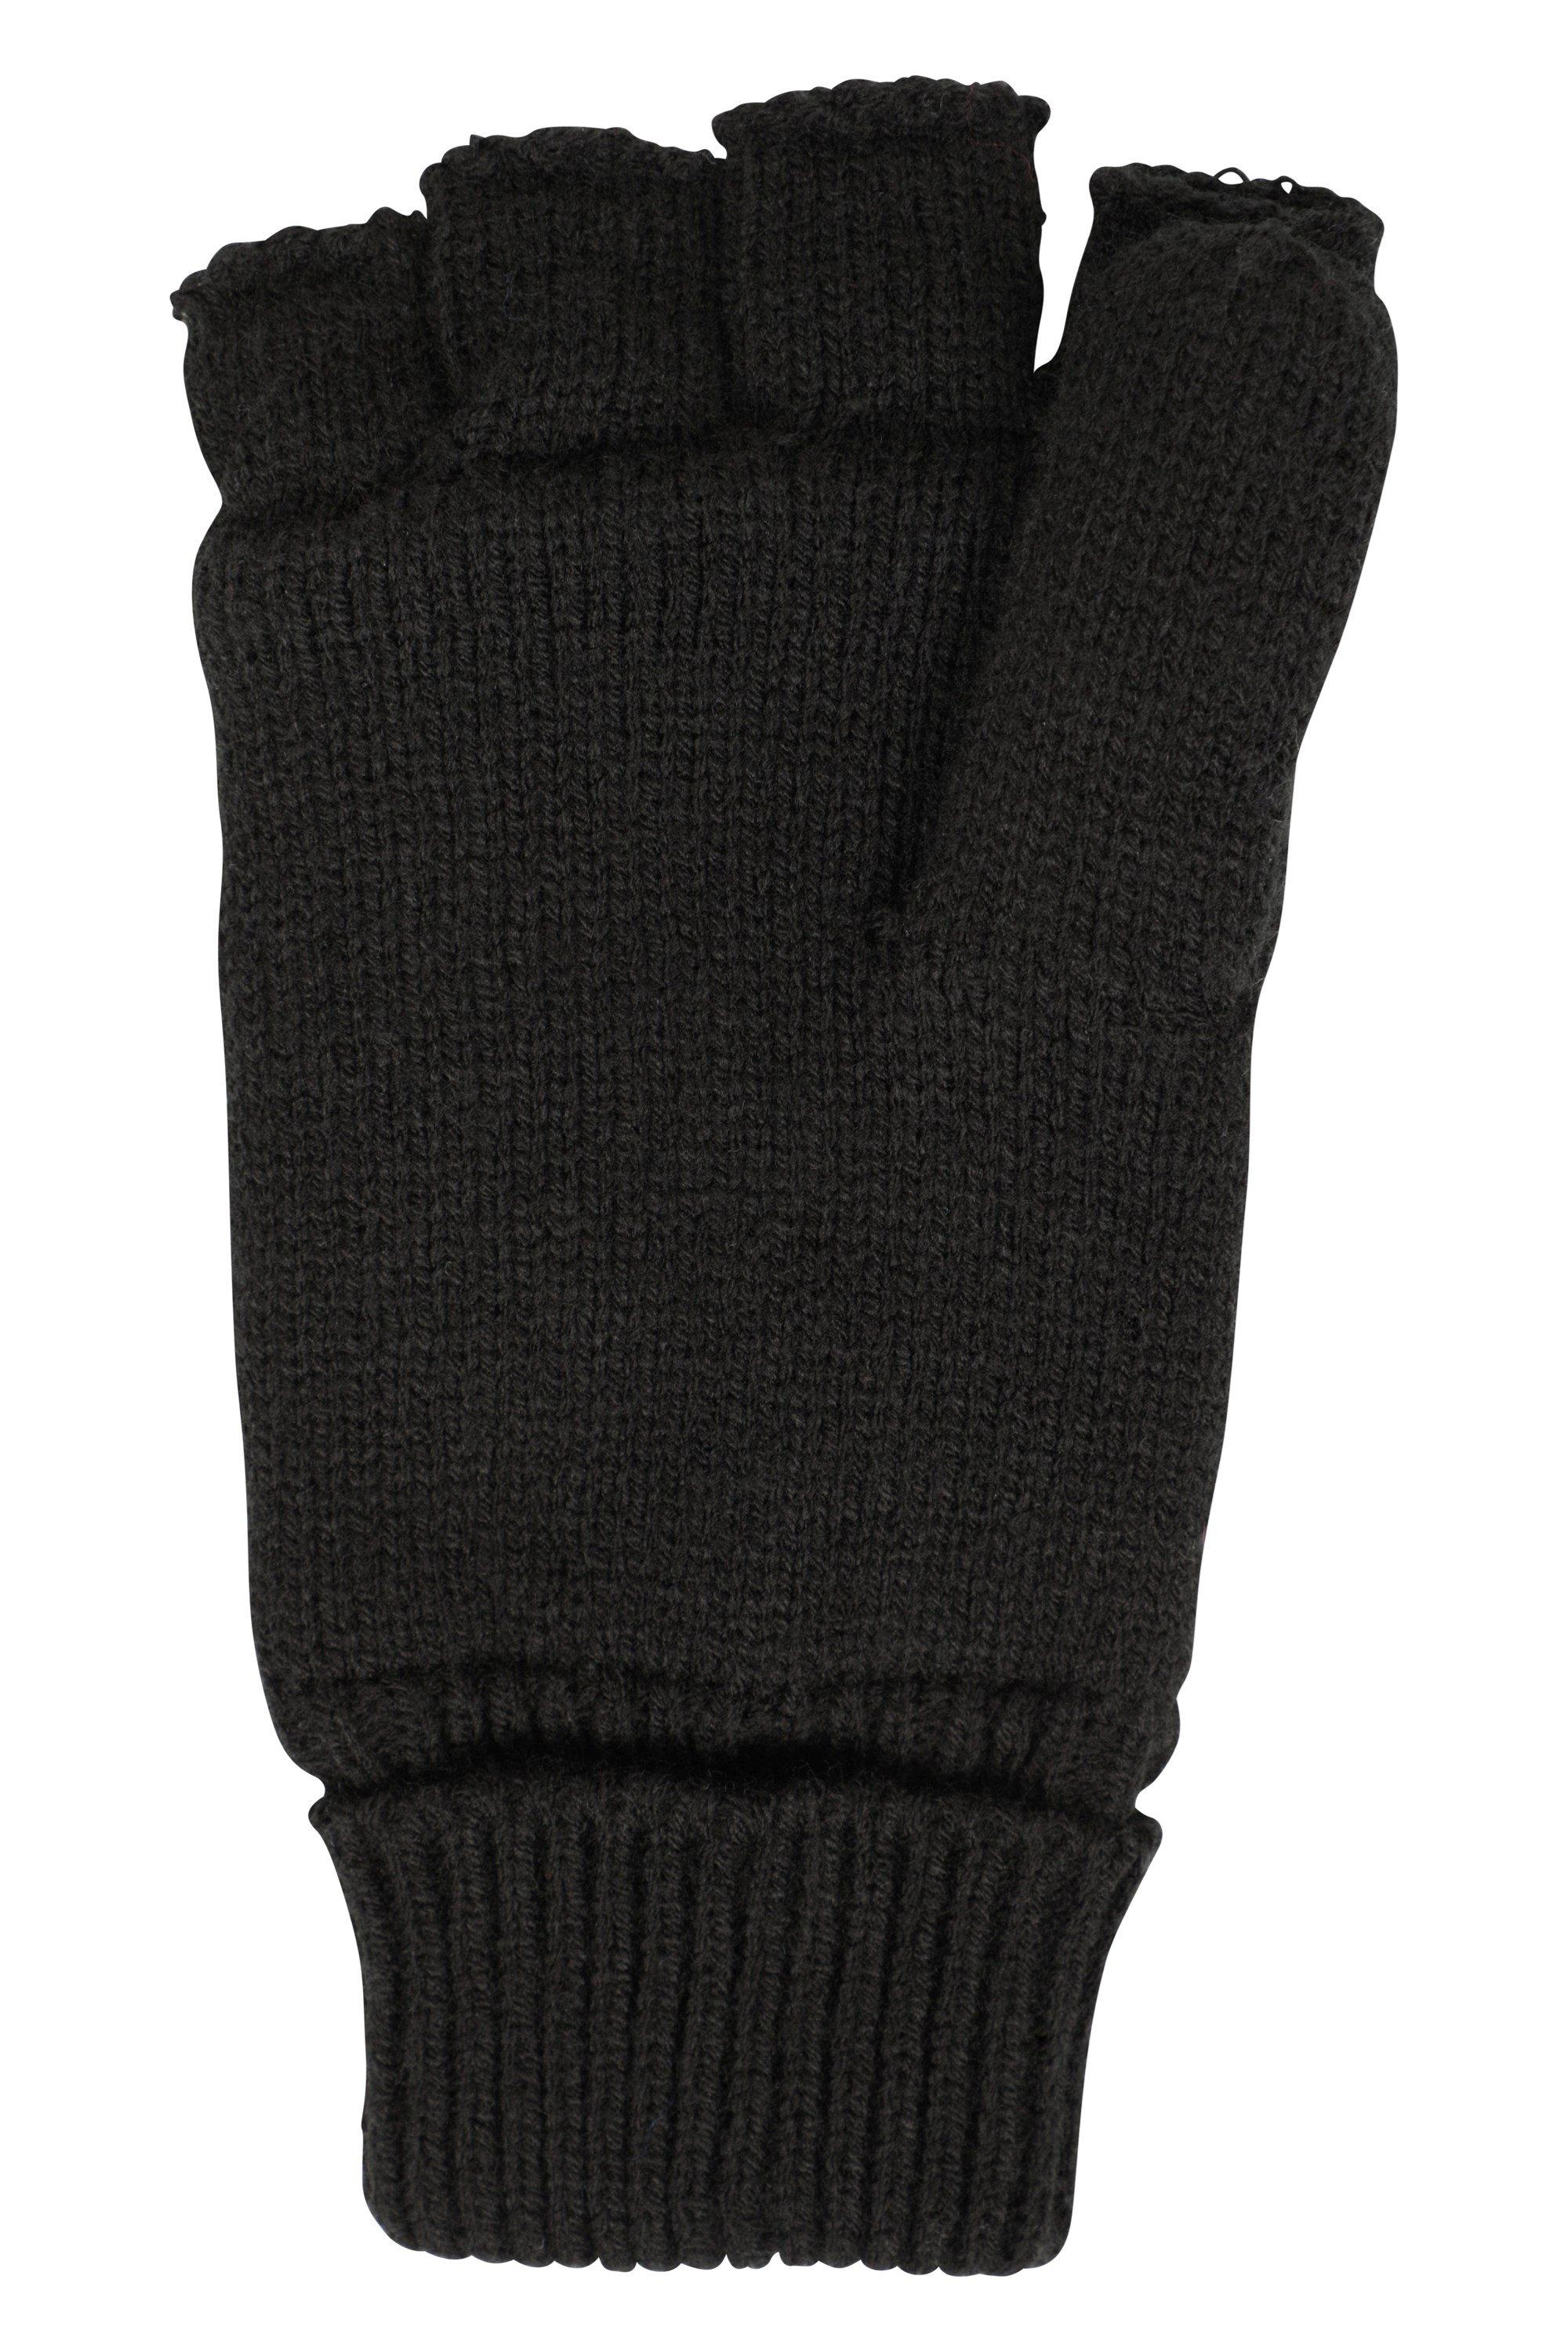 Вязаные перчатки без пальцев на флисовой подкладке Mountain Warehouse, черный